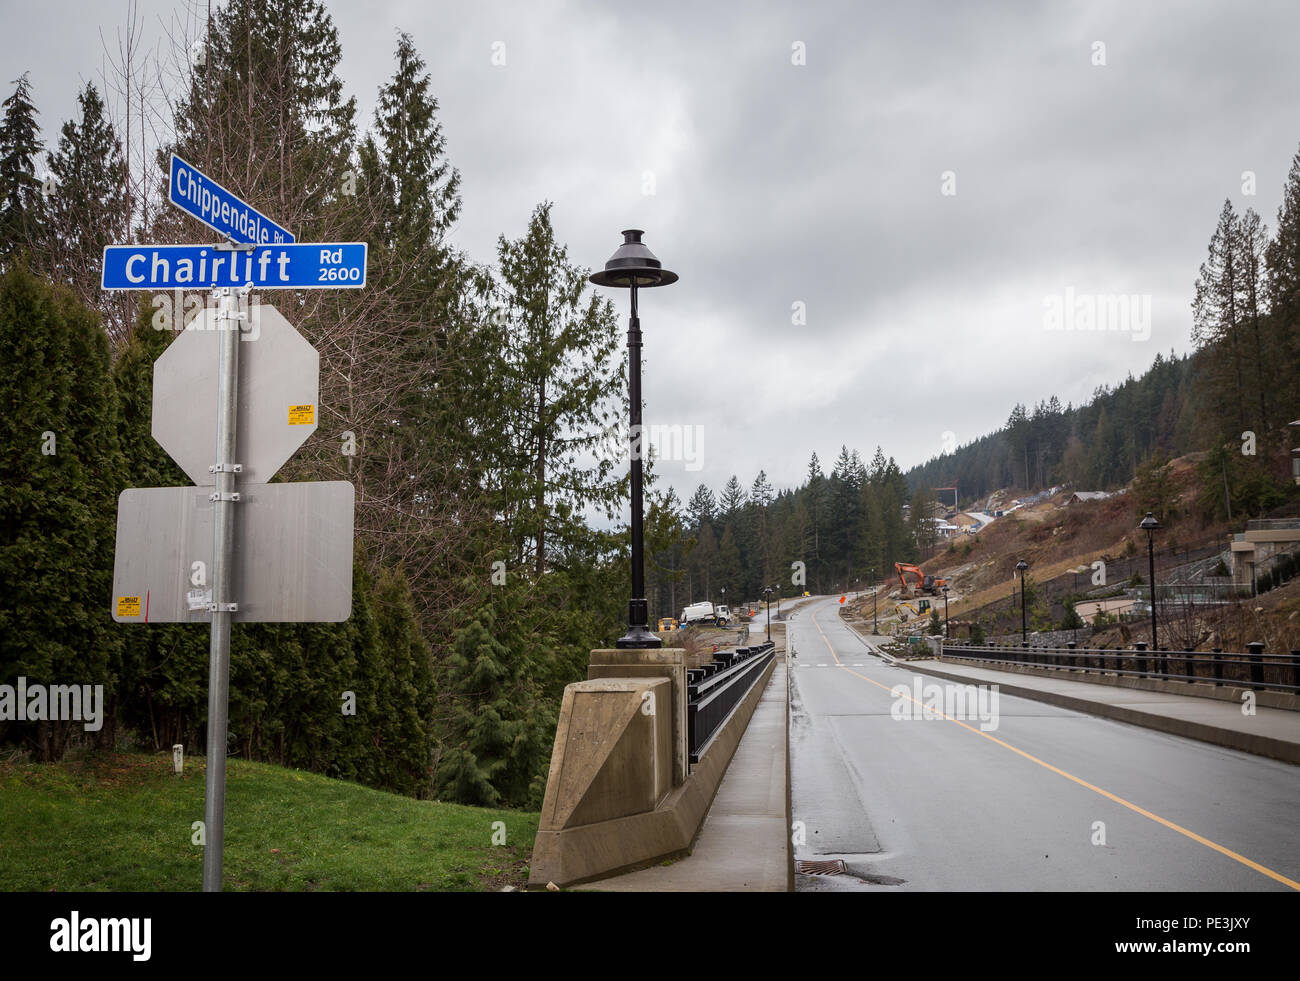 WEST Vancouver, BC, Canada - Feb 10, 2016: l'estensione a Chippendale Rd in West Vancouver proprietà britannica. Questa nuova strada collega la proprietà britannica a Cypress Bowl Rd. Foto Stock